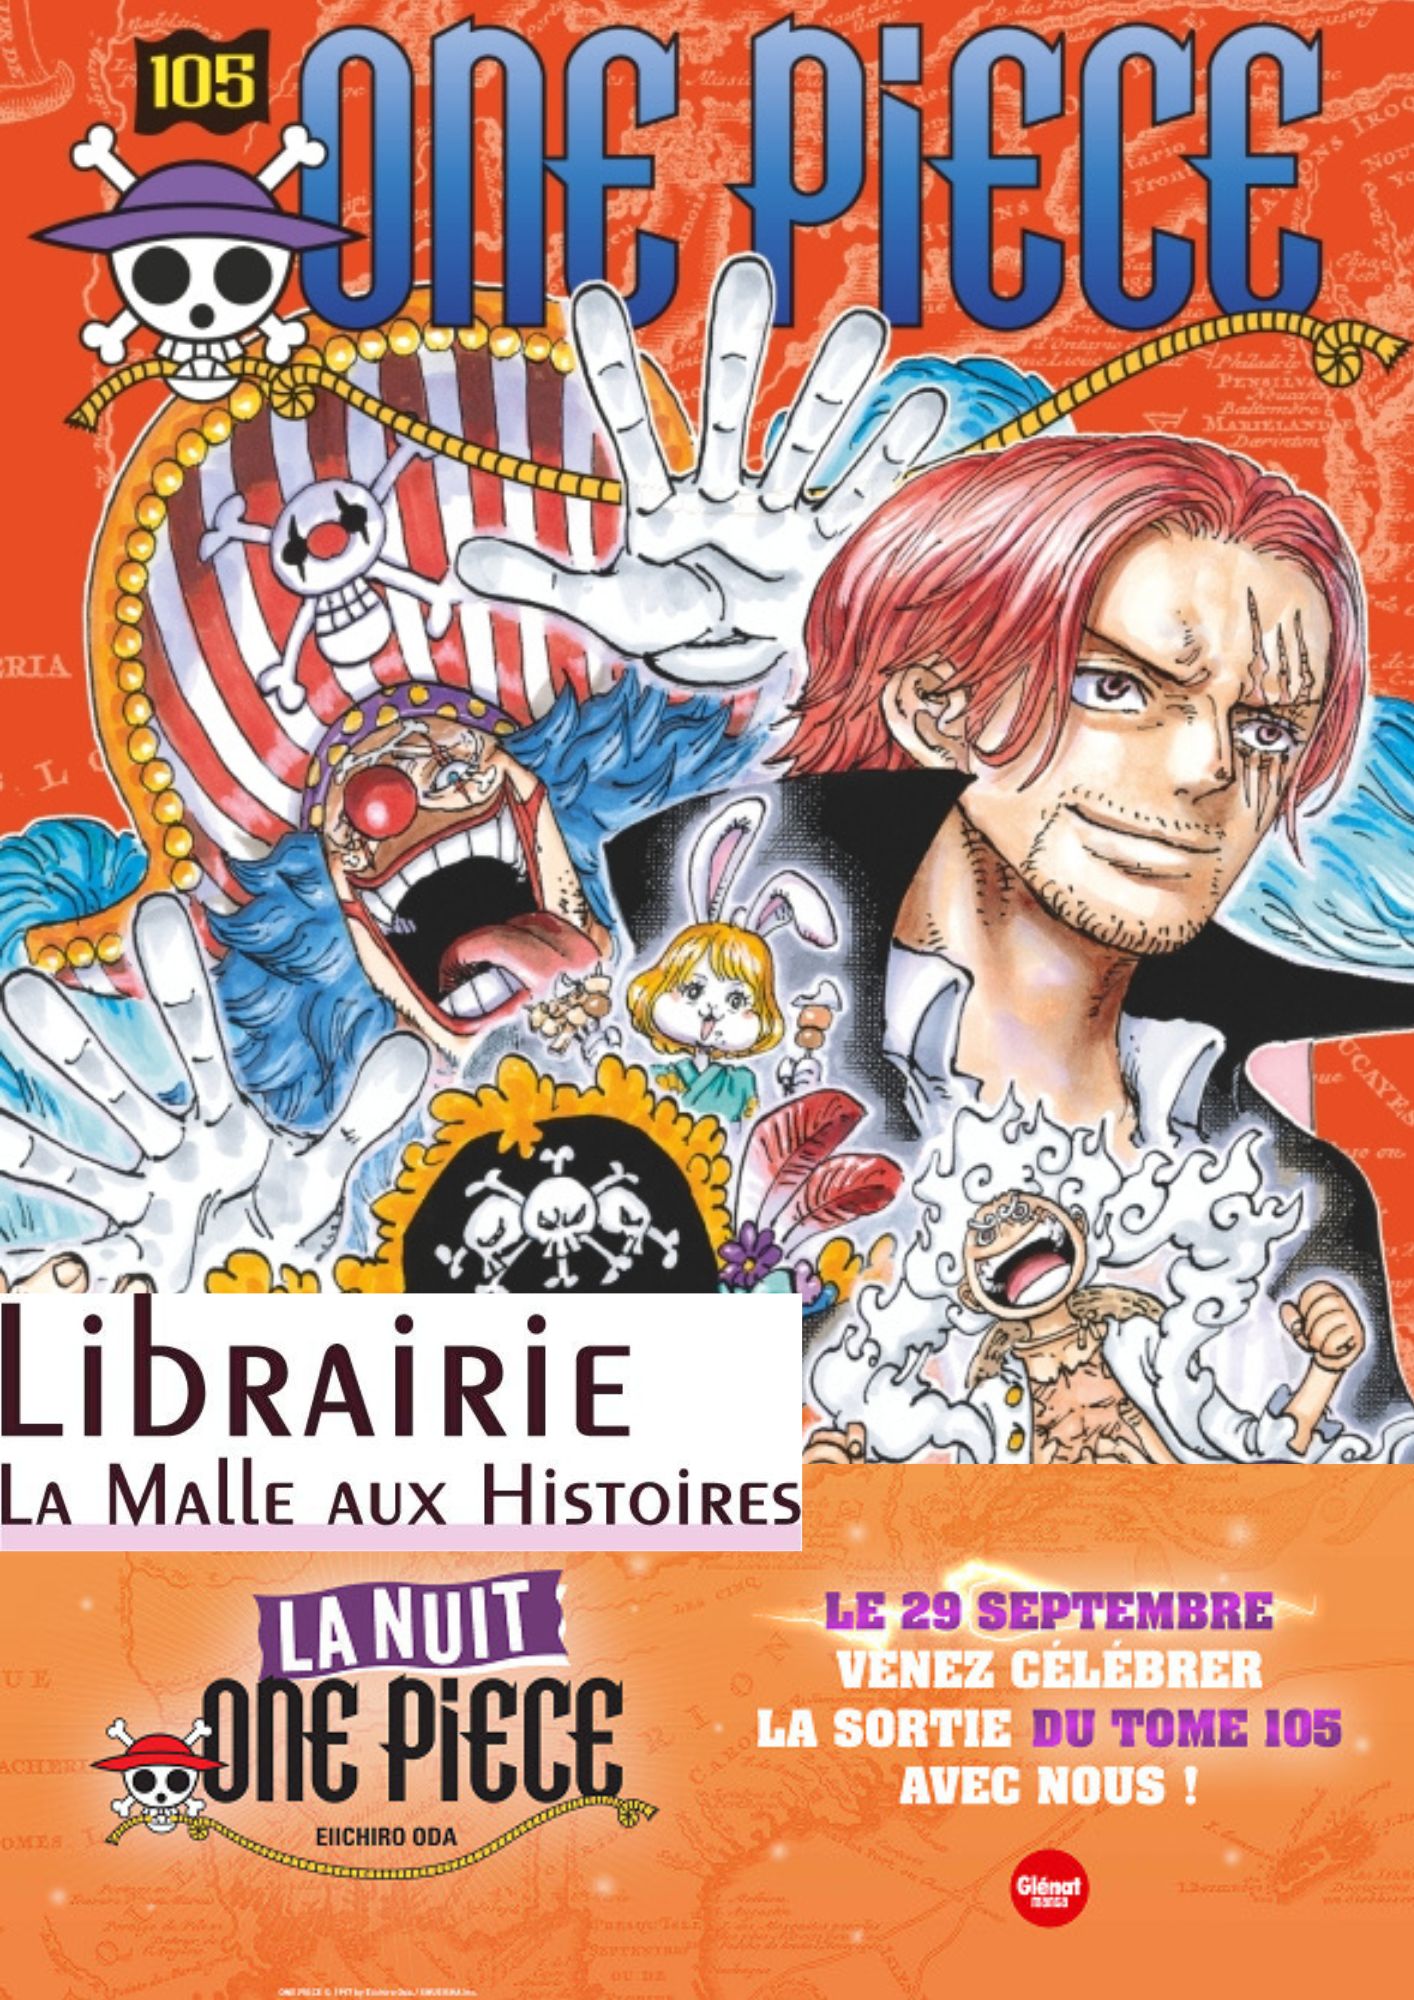 Nuit One Piece : à Châteauroux, les libraires se mettent en mode